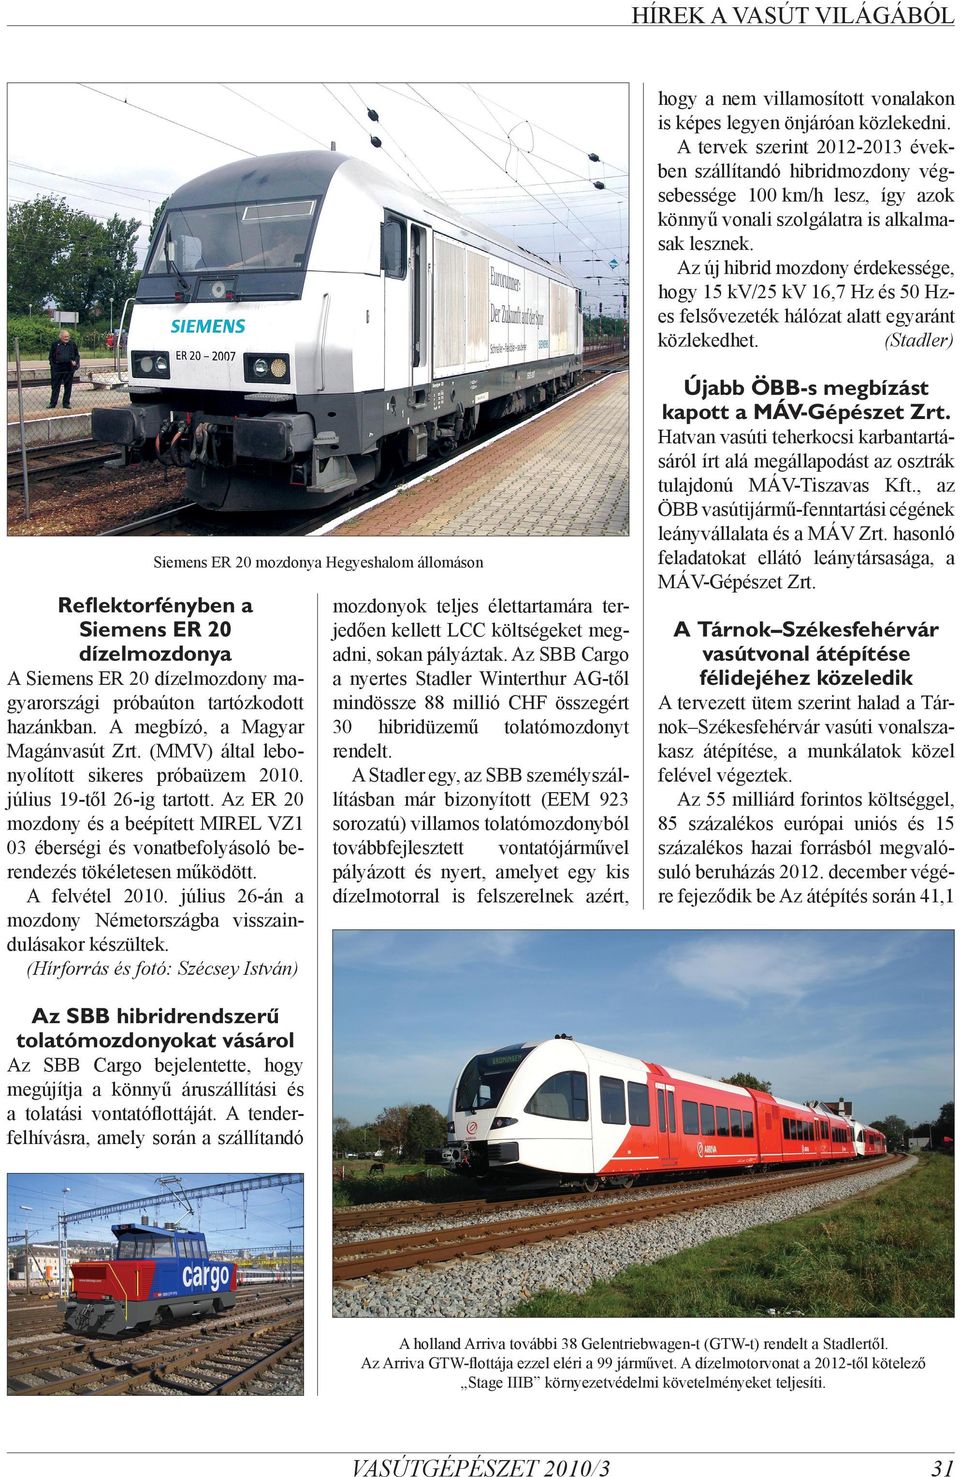 Az új hibrid mozdony érdekessége, hogy 15 kv/25 kv 16,7 Hz és 50 Hzes felsővezeték hálózat alatt egyaránt közlekedhet. (Stadler) Újabb ÖBB-s megbízást kapott a MÁV-Gépészet Zrt.